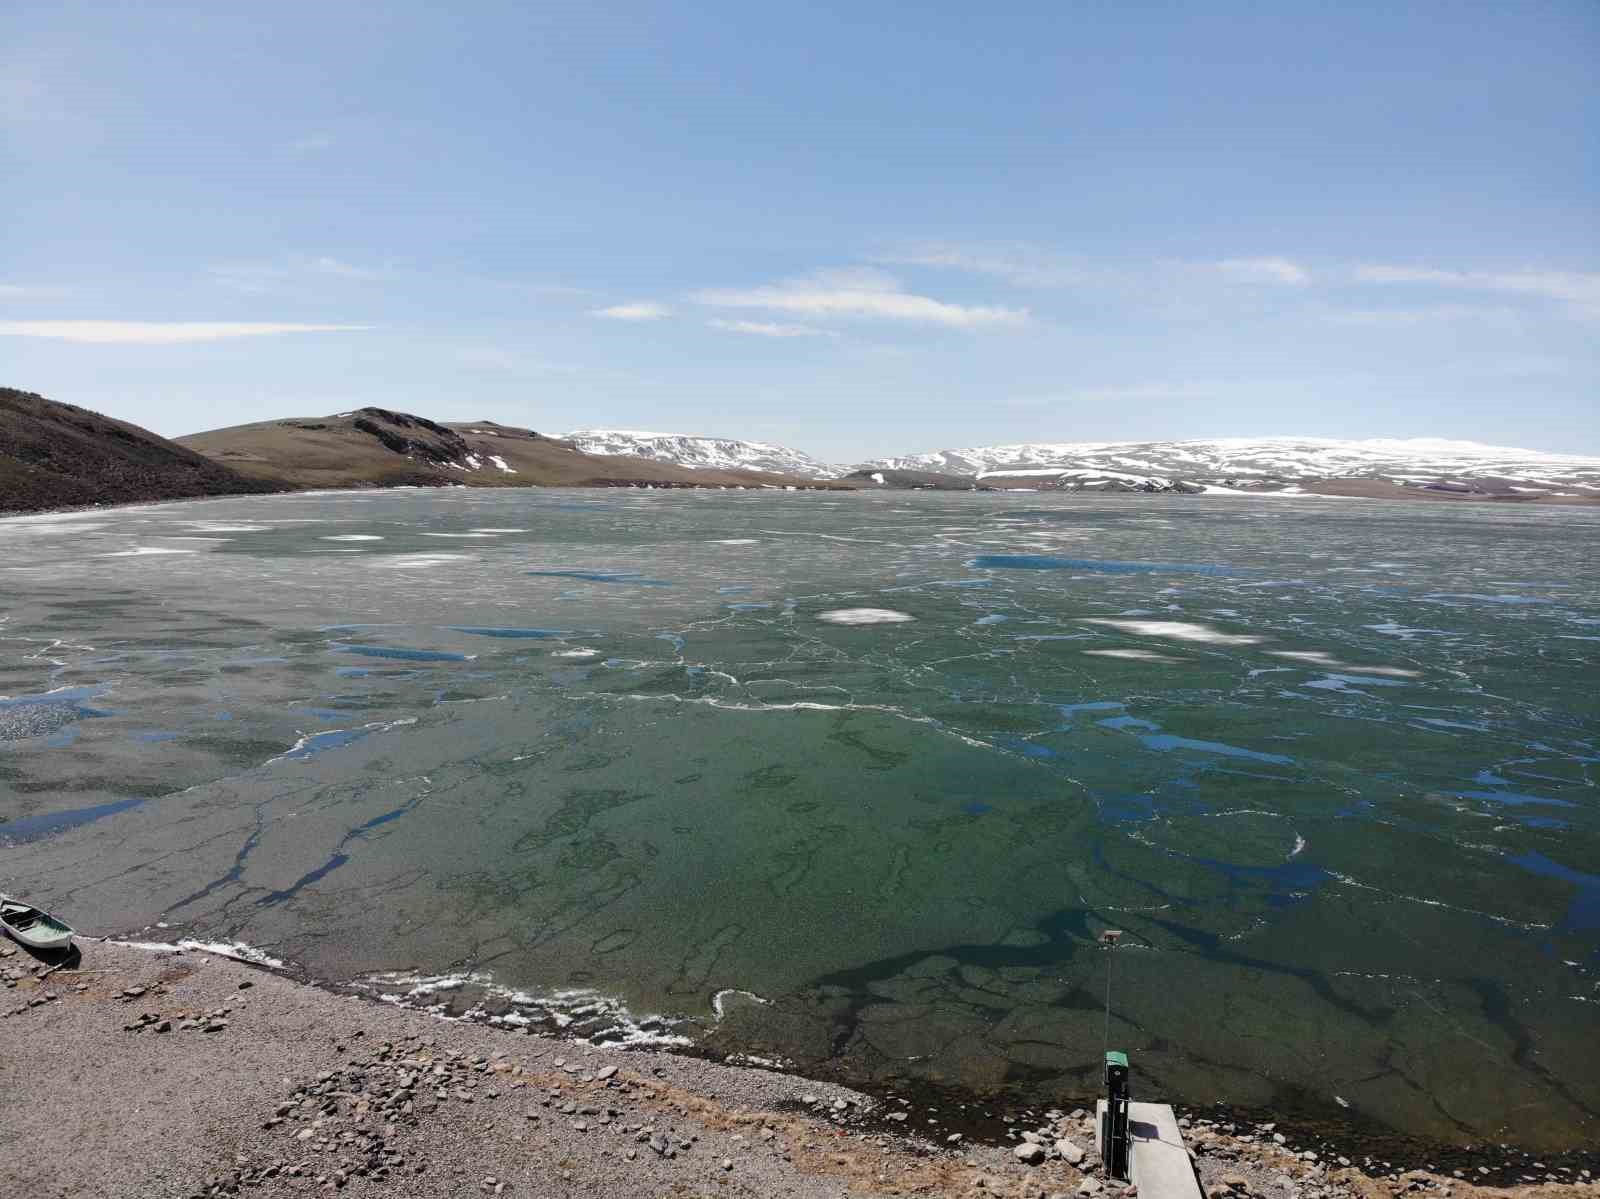 kars’ın zirvesindeki gölün buzları çözülüyor